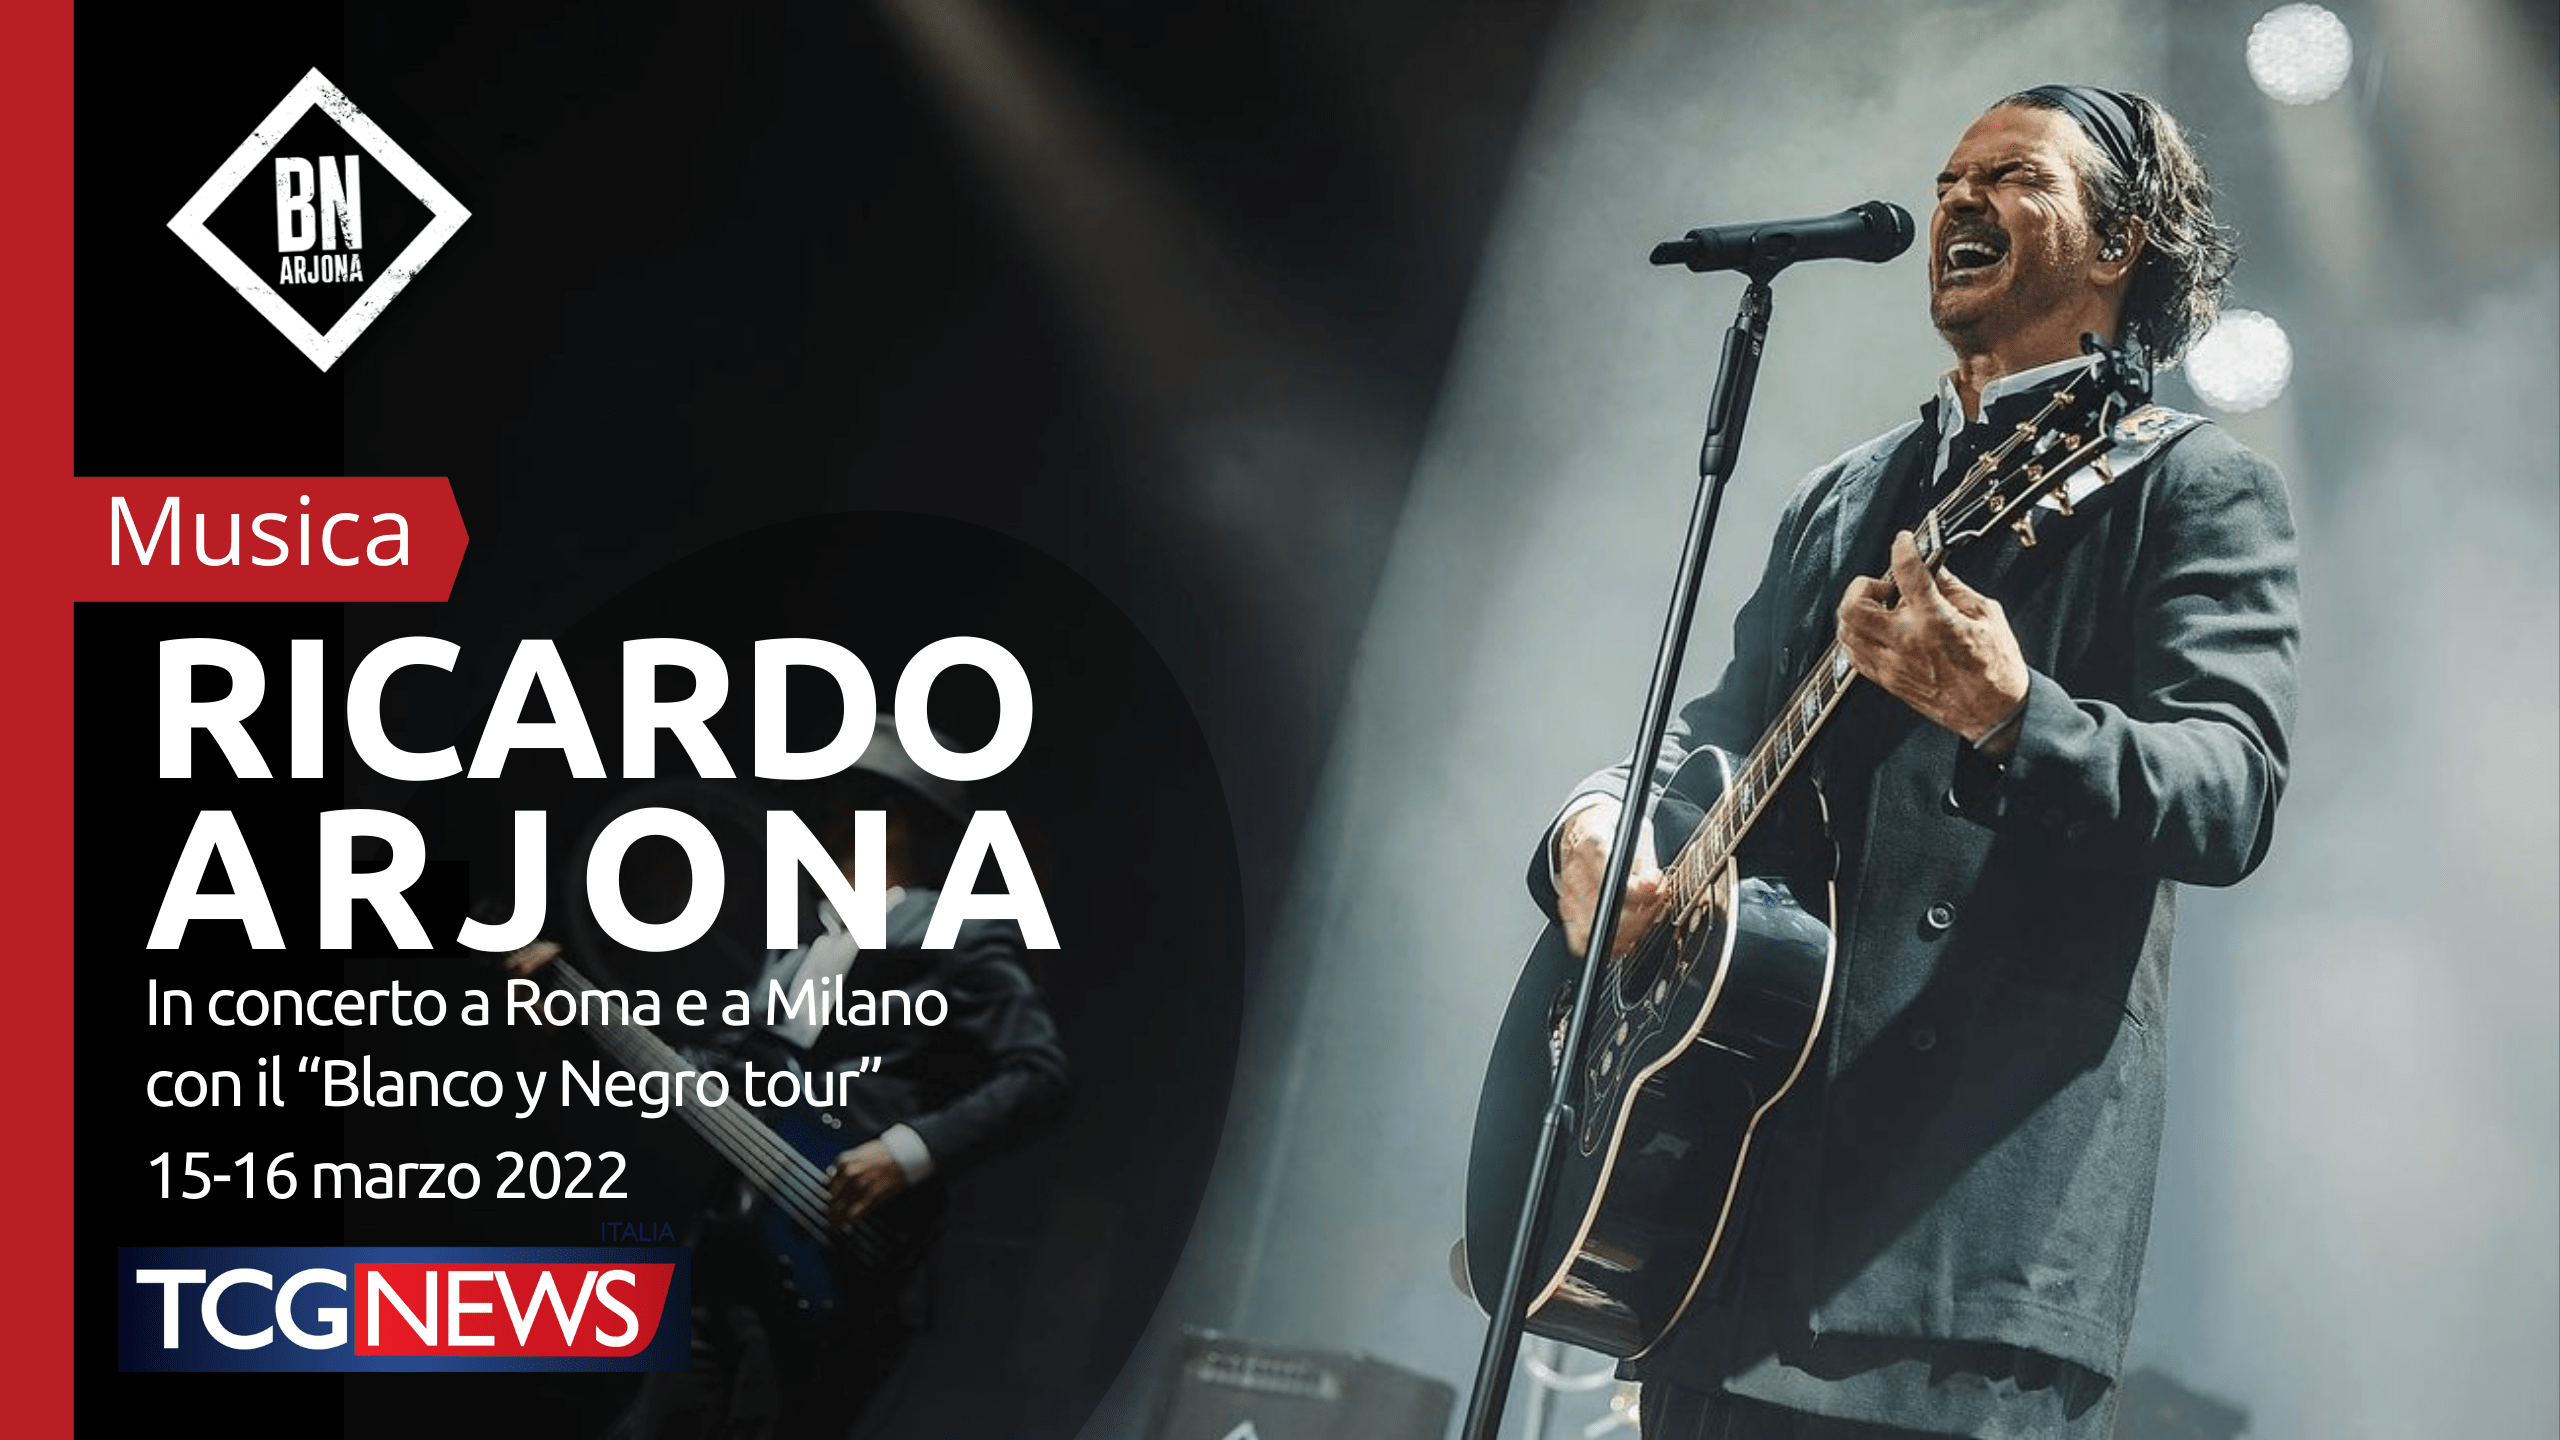 Ricardo Arjona in concerto a Roma e a Milano  con il “Blanco y Negro tour” 15-16 marzo 2022